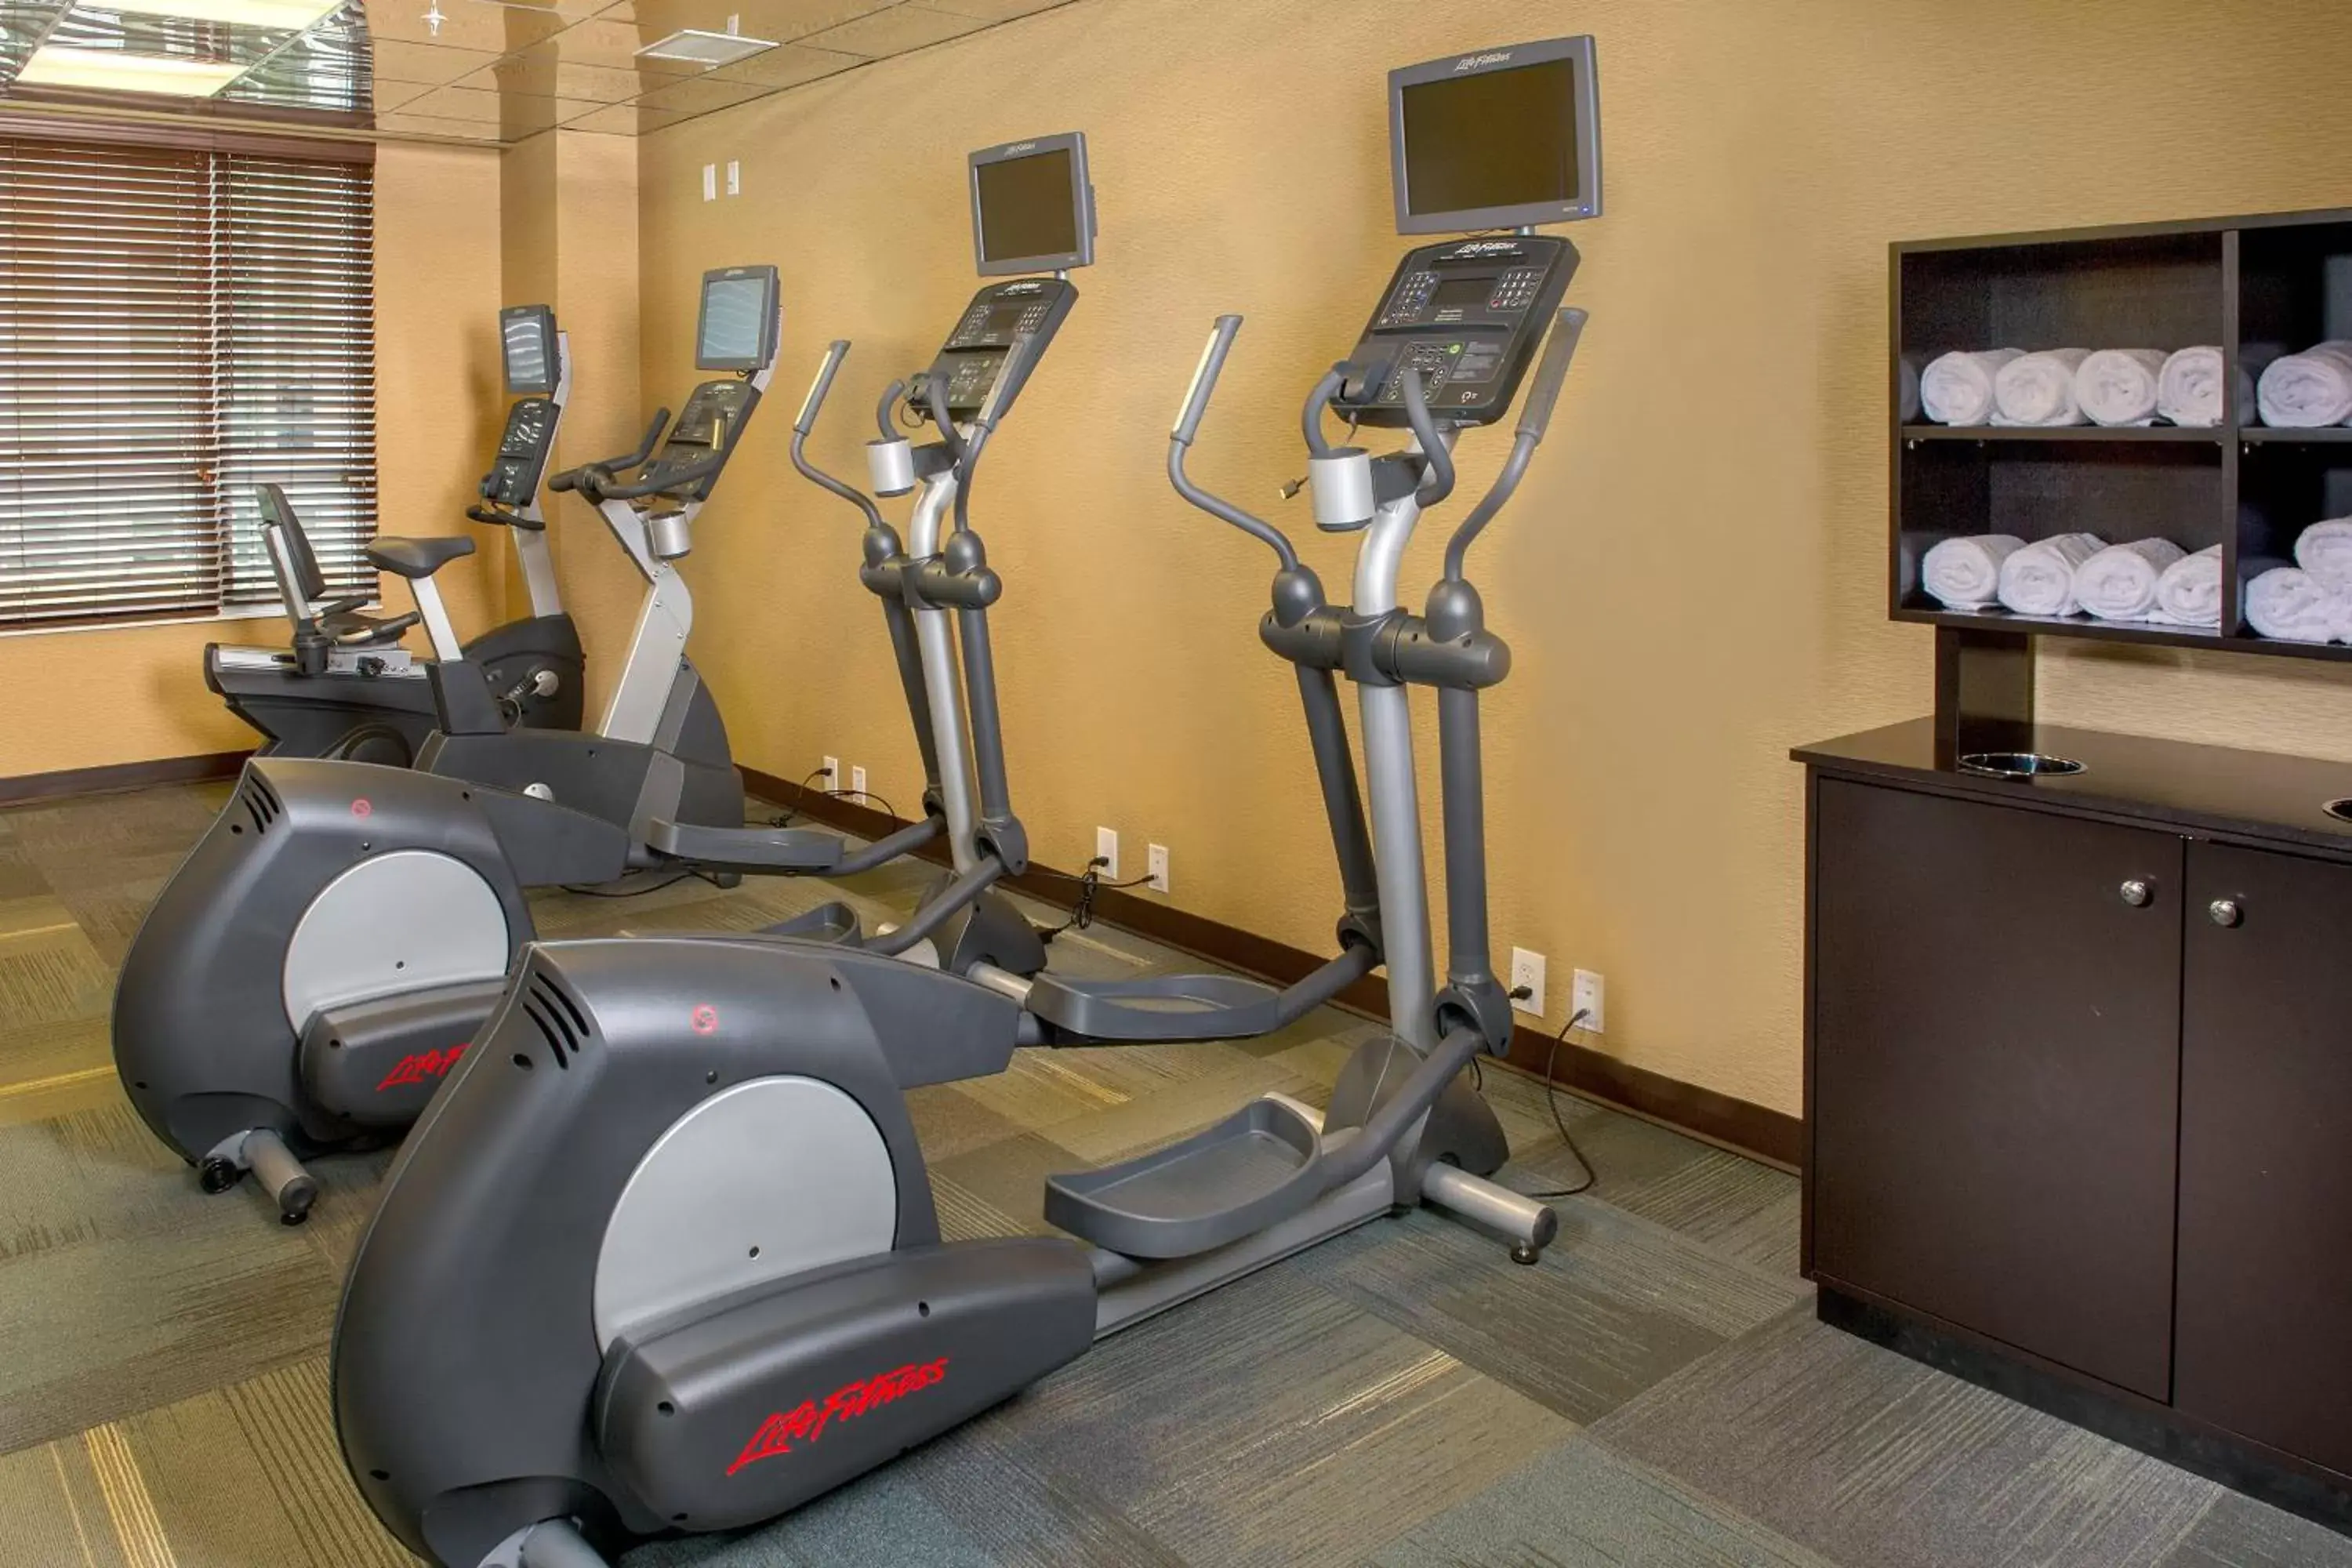 Fitness centre/facilities, Fitness Center/Facilities in Residence Inn by Marriott Arlington Ballston